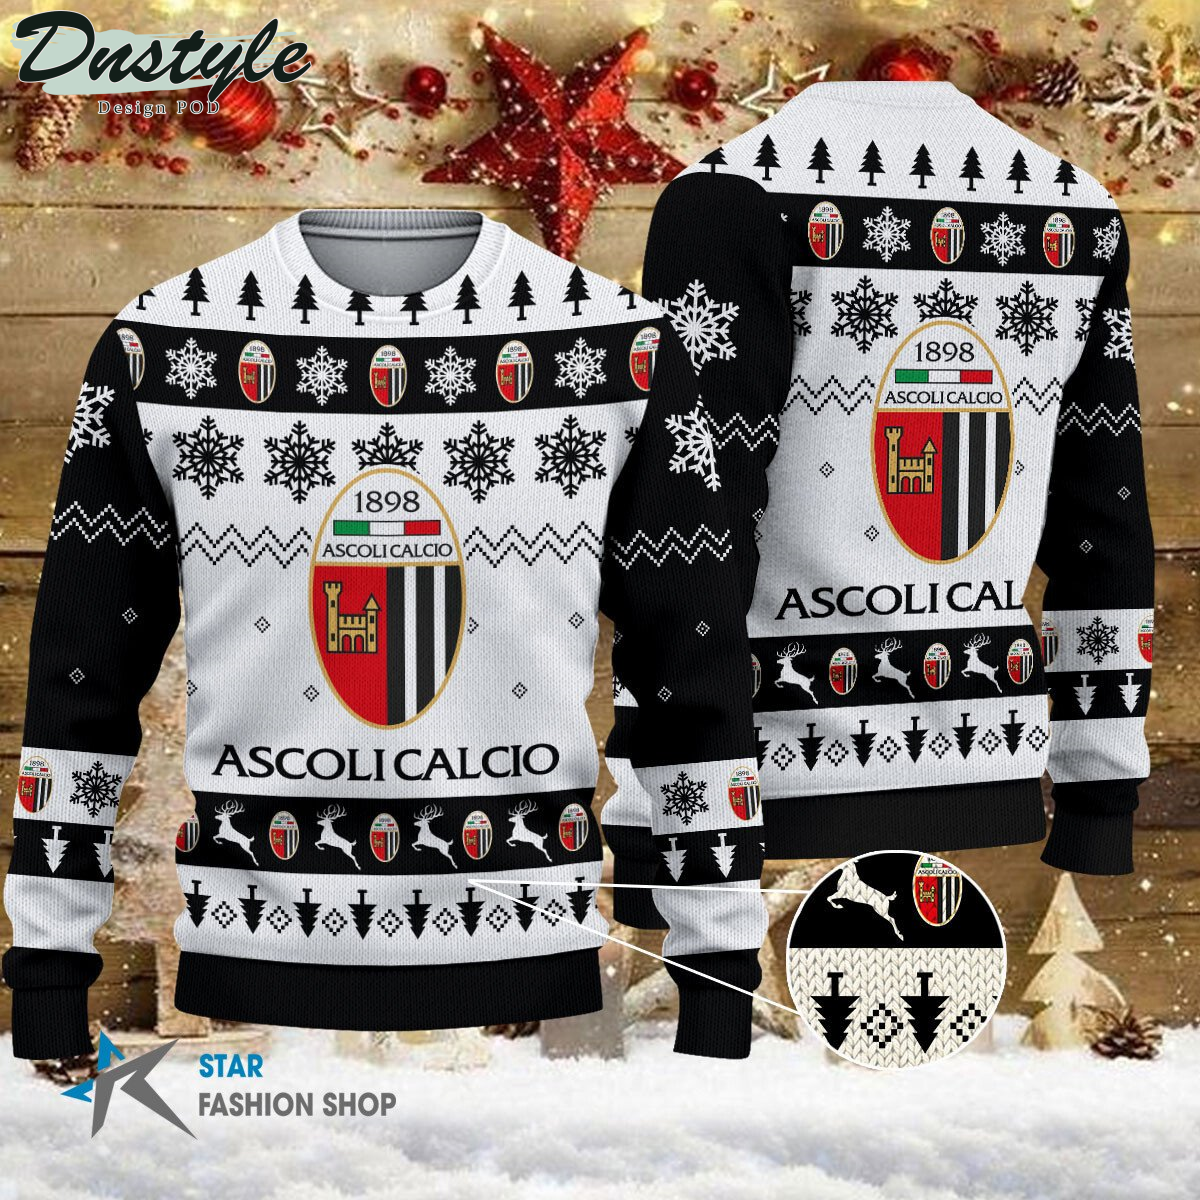 U.S. Cremonese ugly christmas sweater